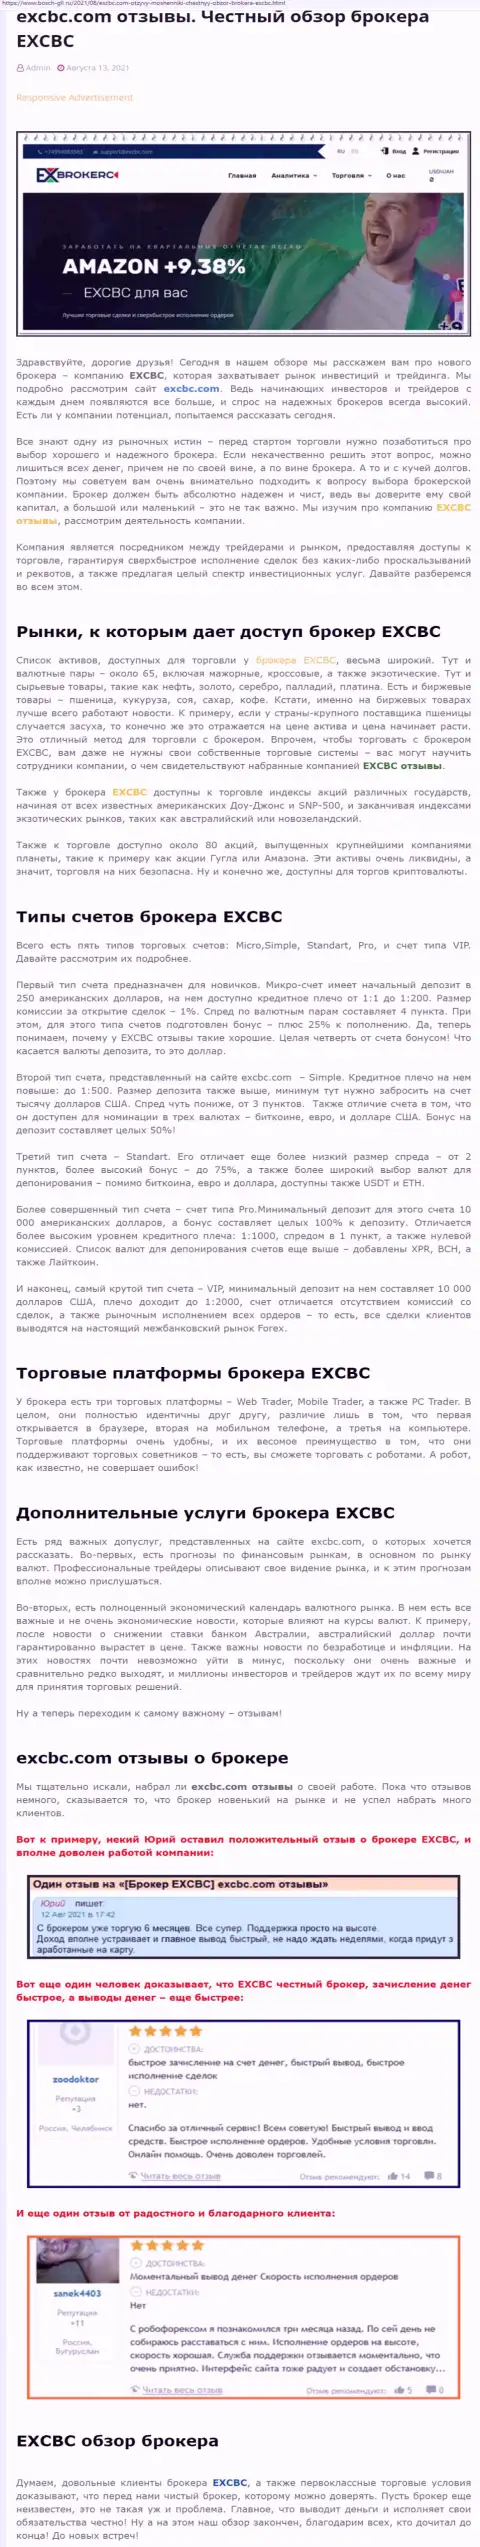 Информационный материал о forex-дилинговом центре EXCBC на сайте bosch gll ru